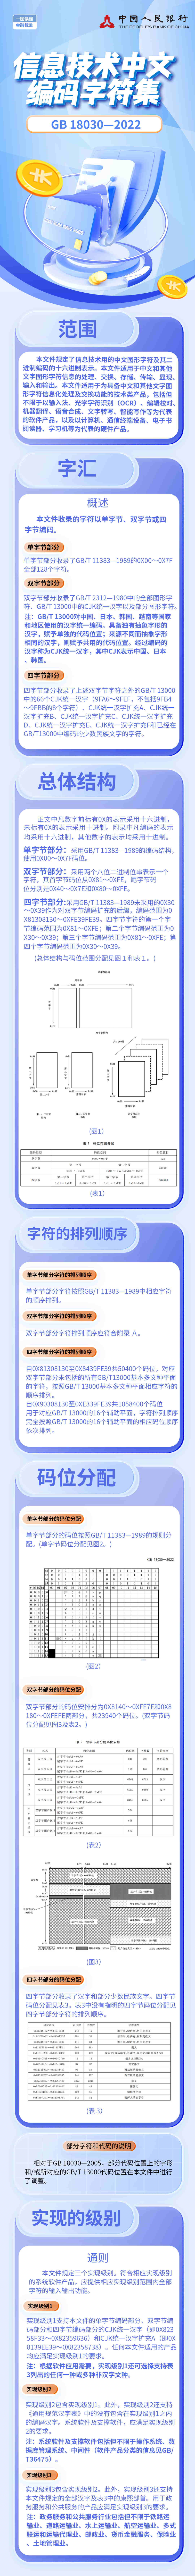 信息技术中文编码字符集标准宣传长图-吉林省分行_看图王.jpg